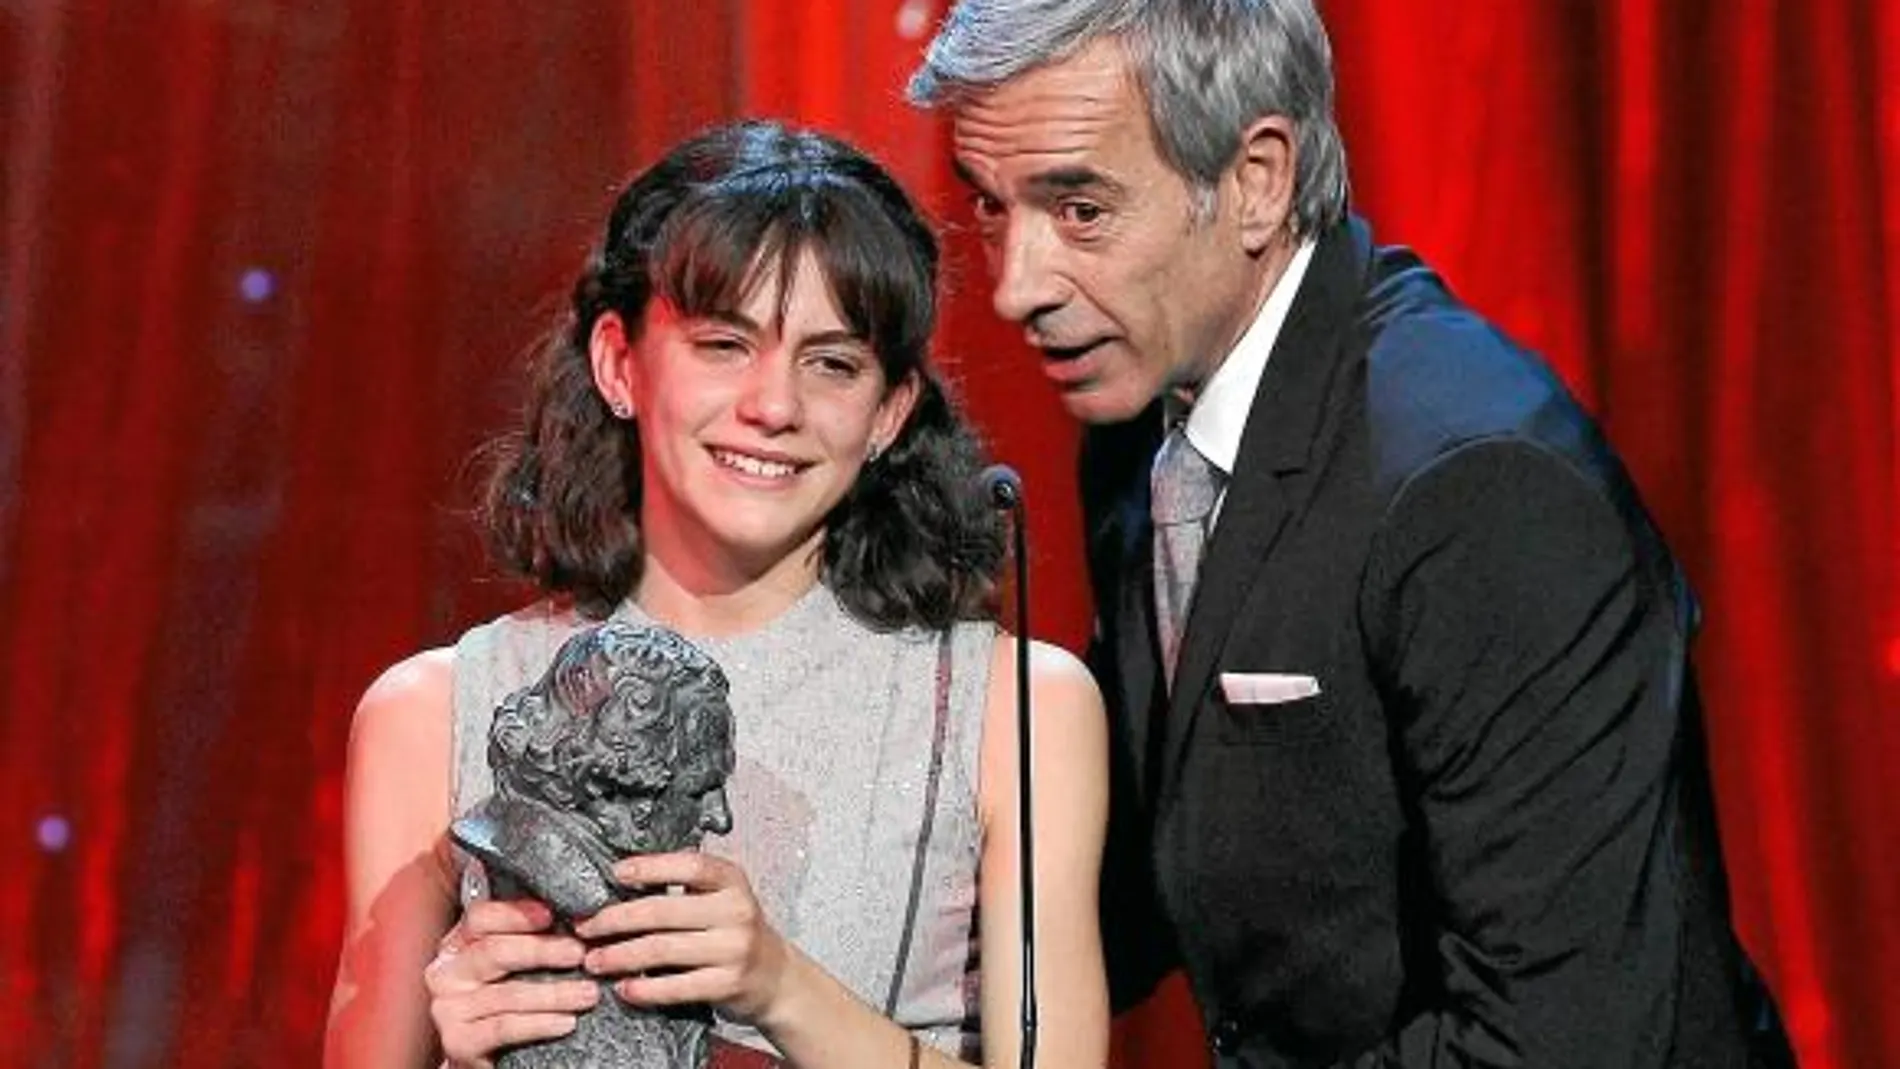 El actor, en la imagen con Marina Comas, protagonizó varios momentos de la gala